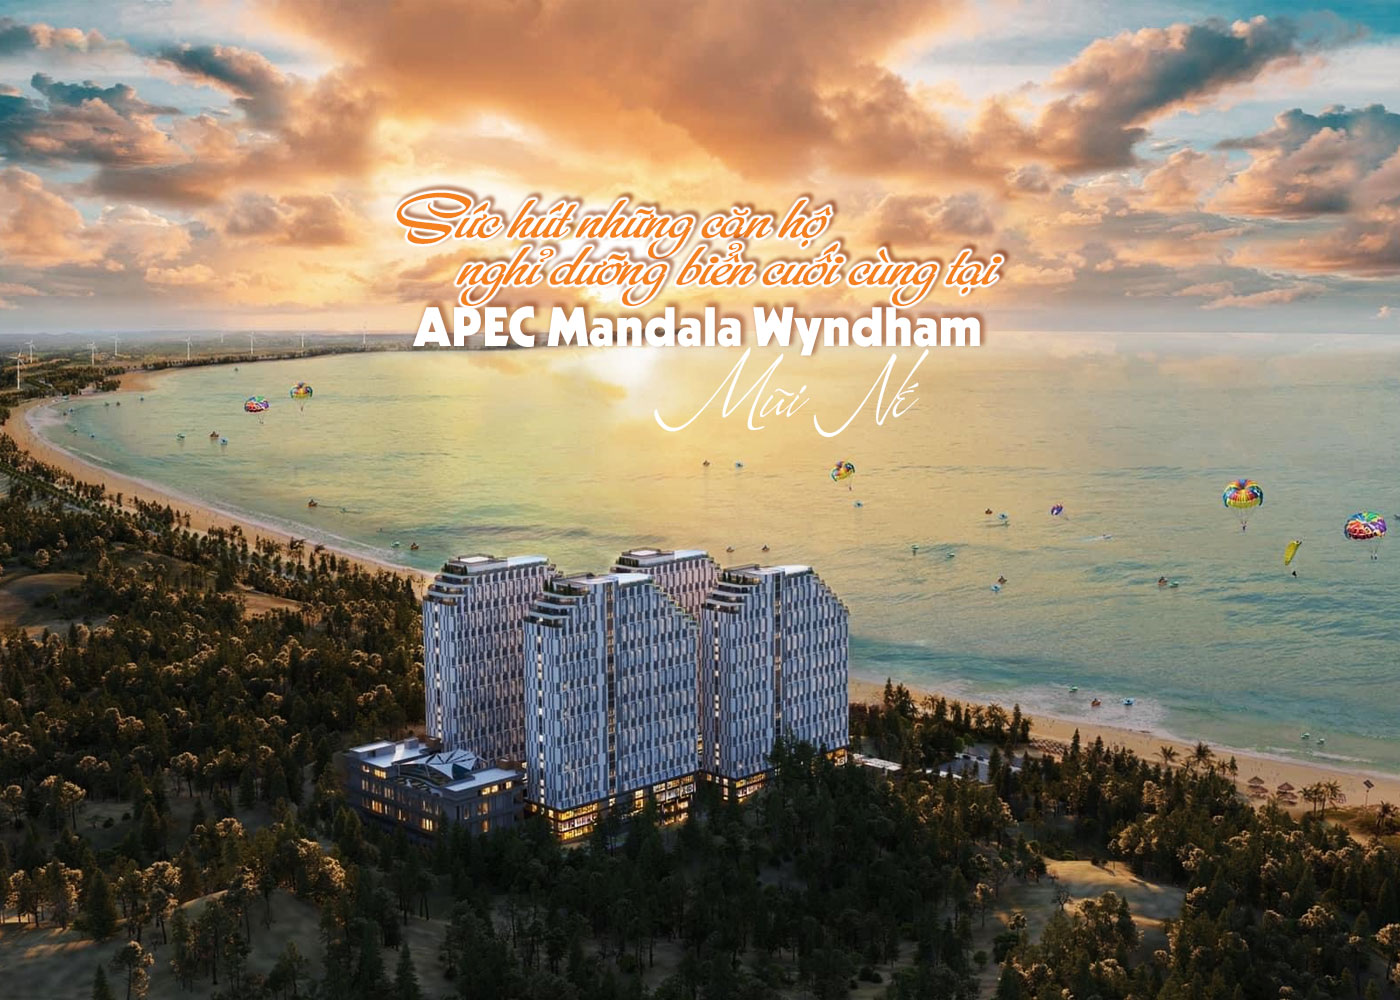 Sức hút những căn hộ nghỉ dưỡng biển cuối cùng tại APEC Mandala Wyndham Mũi Né - Ảnh 1